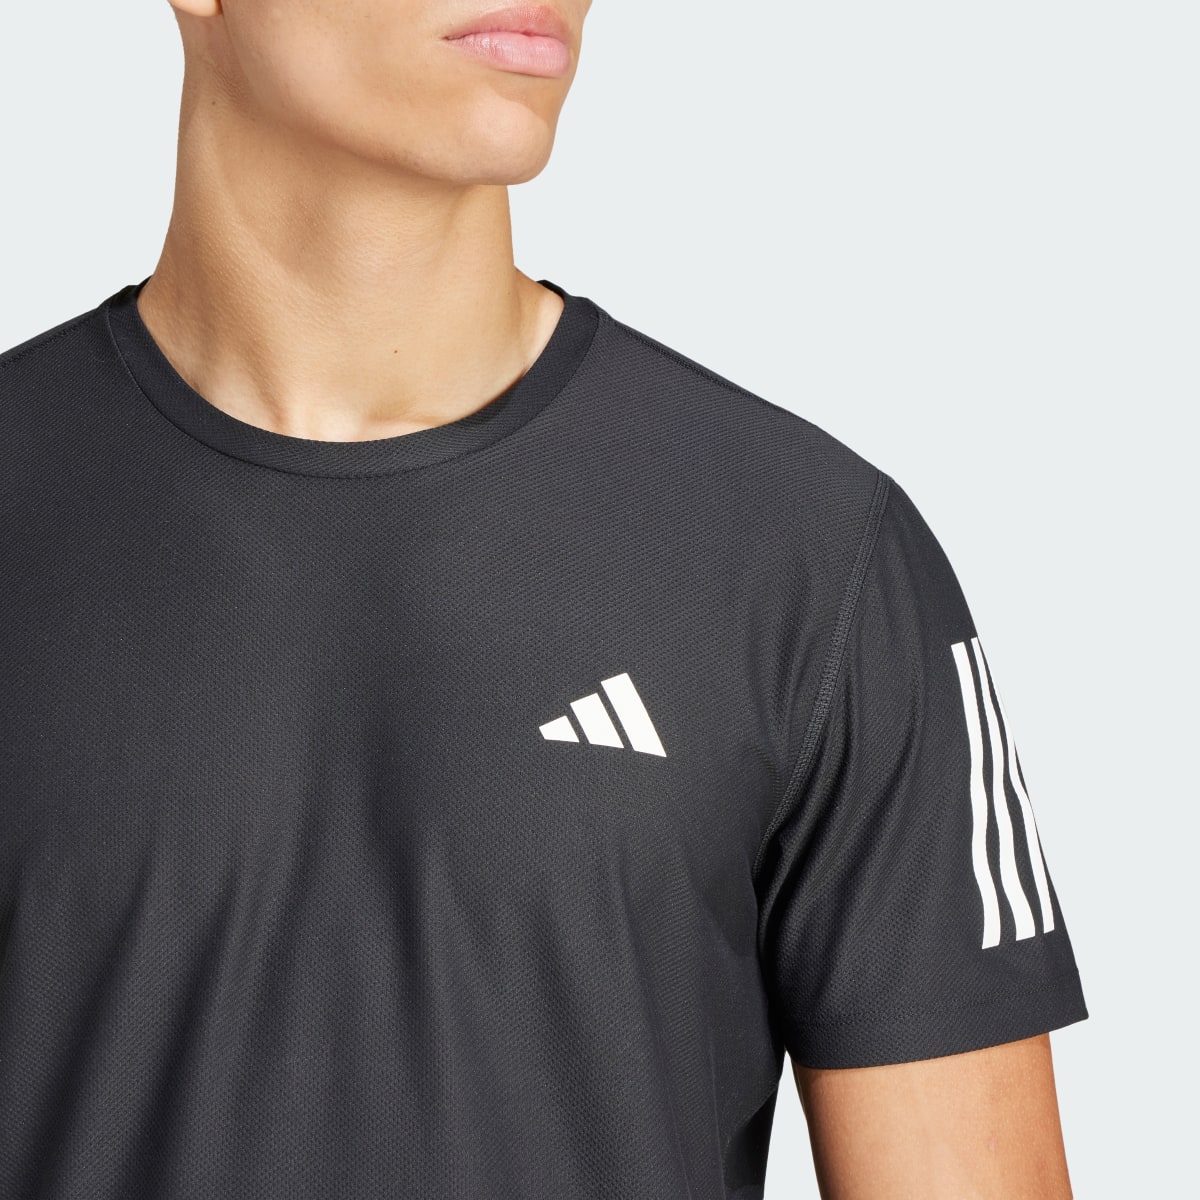 Adidas Own the Run T-Shirt. 6